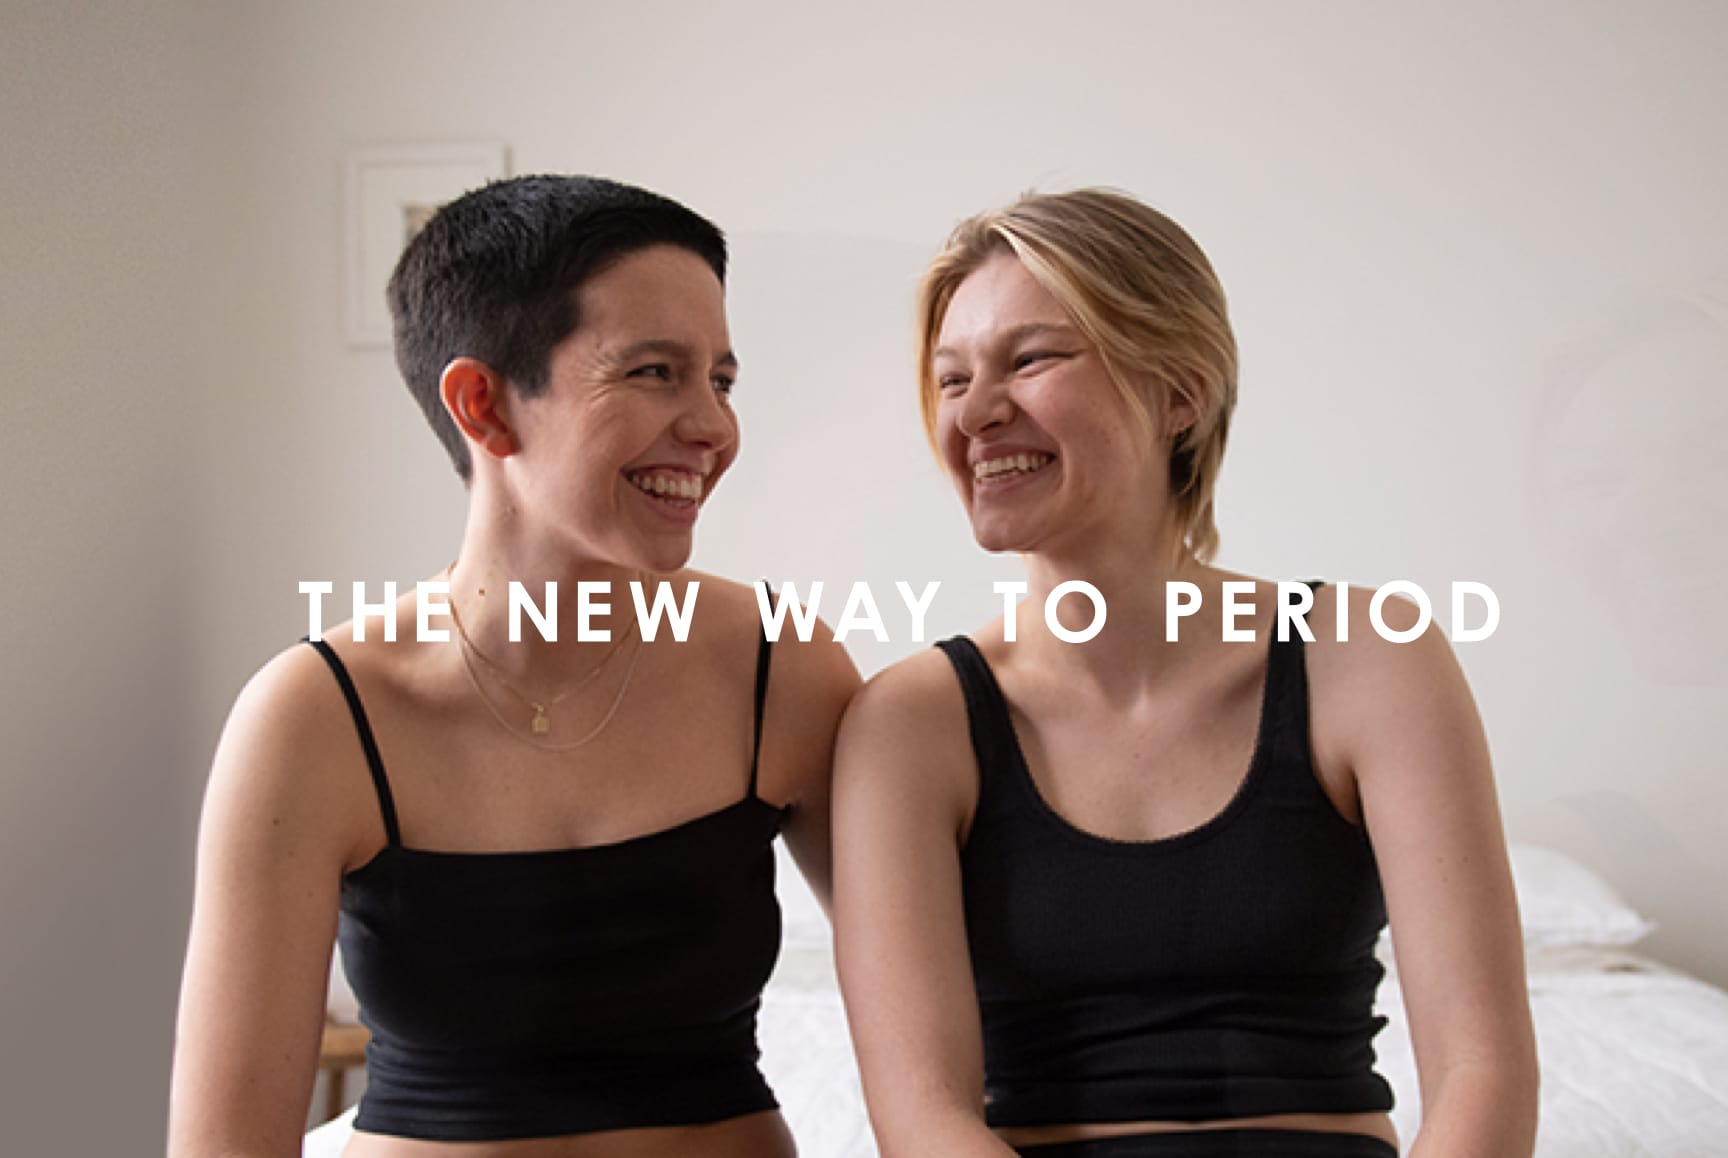 Modibodi launches progressive campaign 'The New Way to Period' via